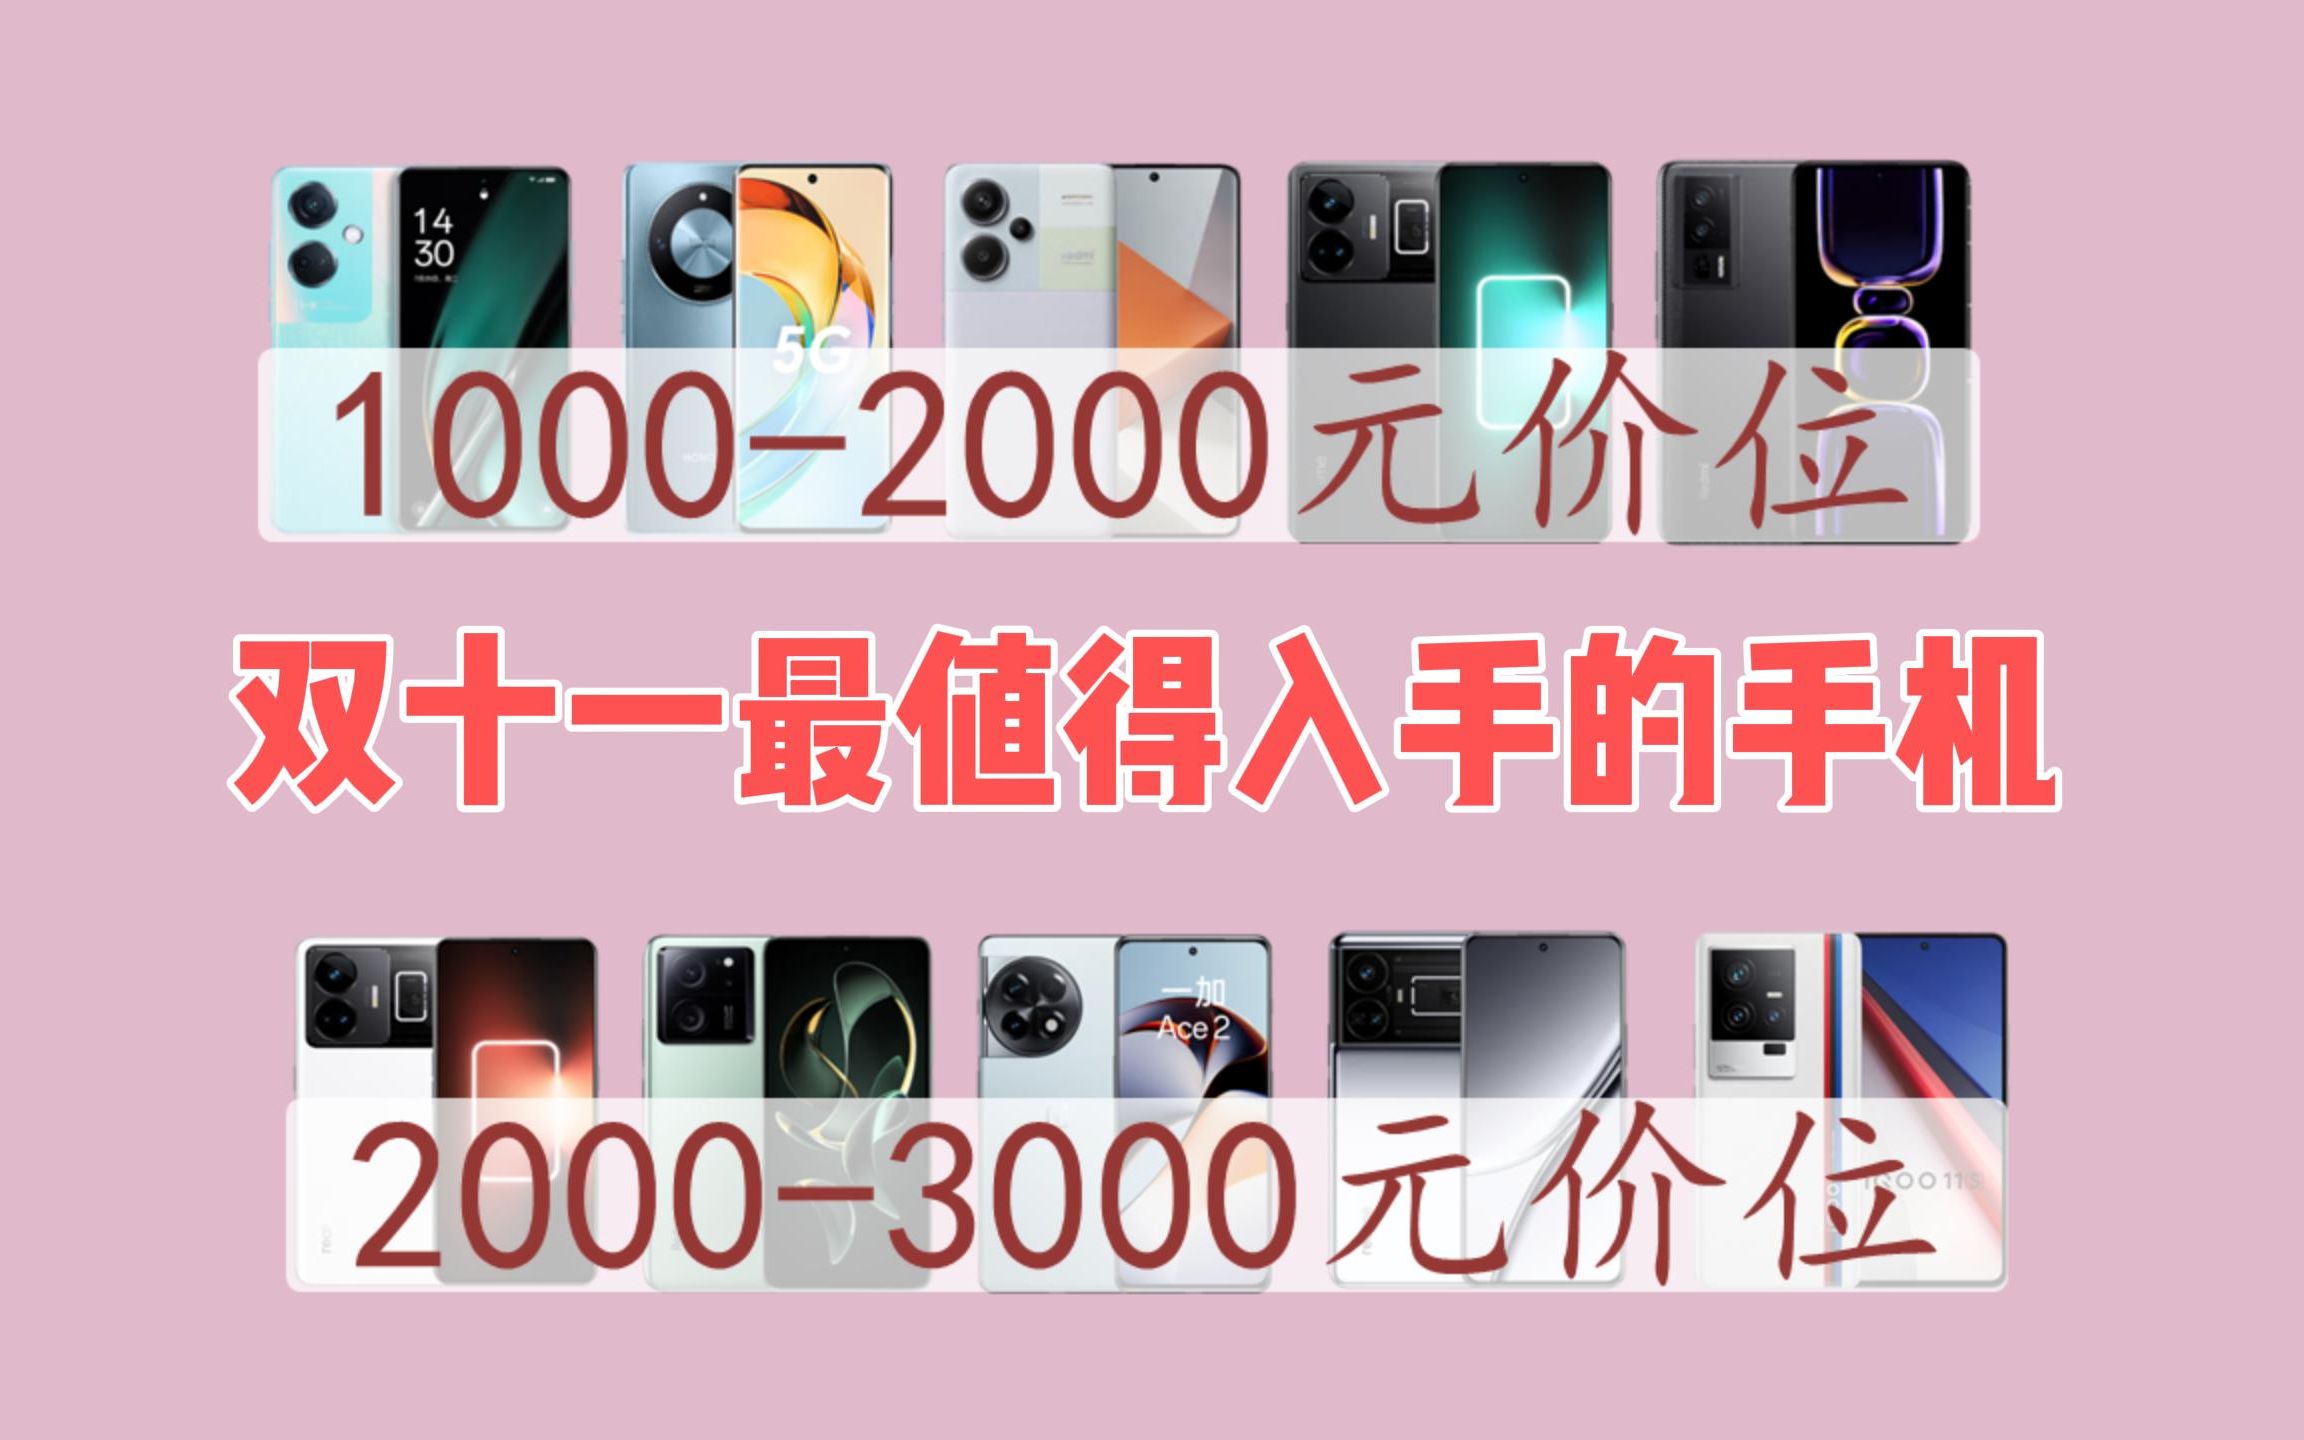 安卓手机品牌排行榜_十月份安卓性能排行榜前100名